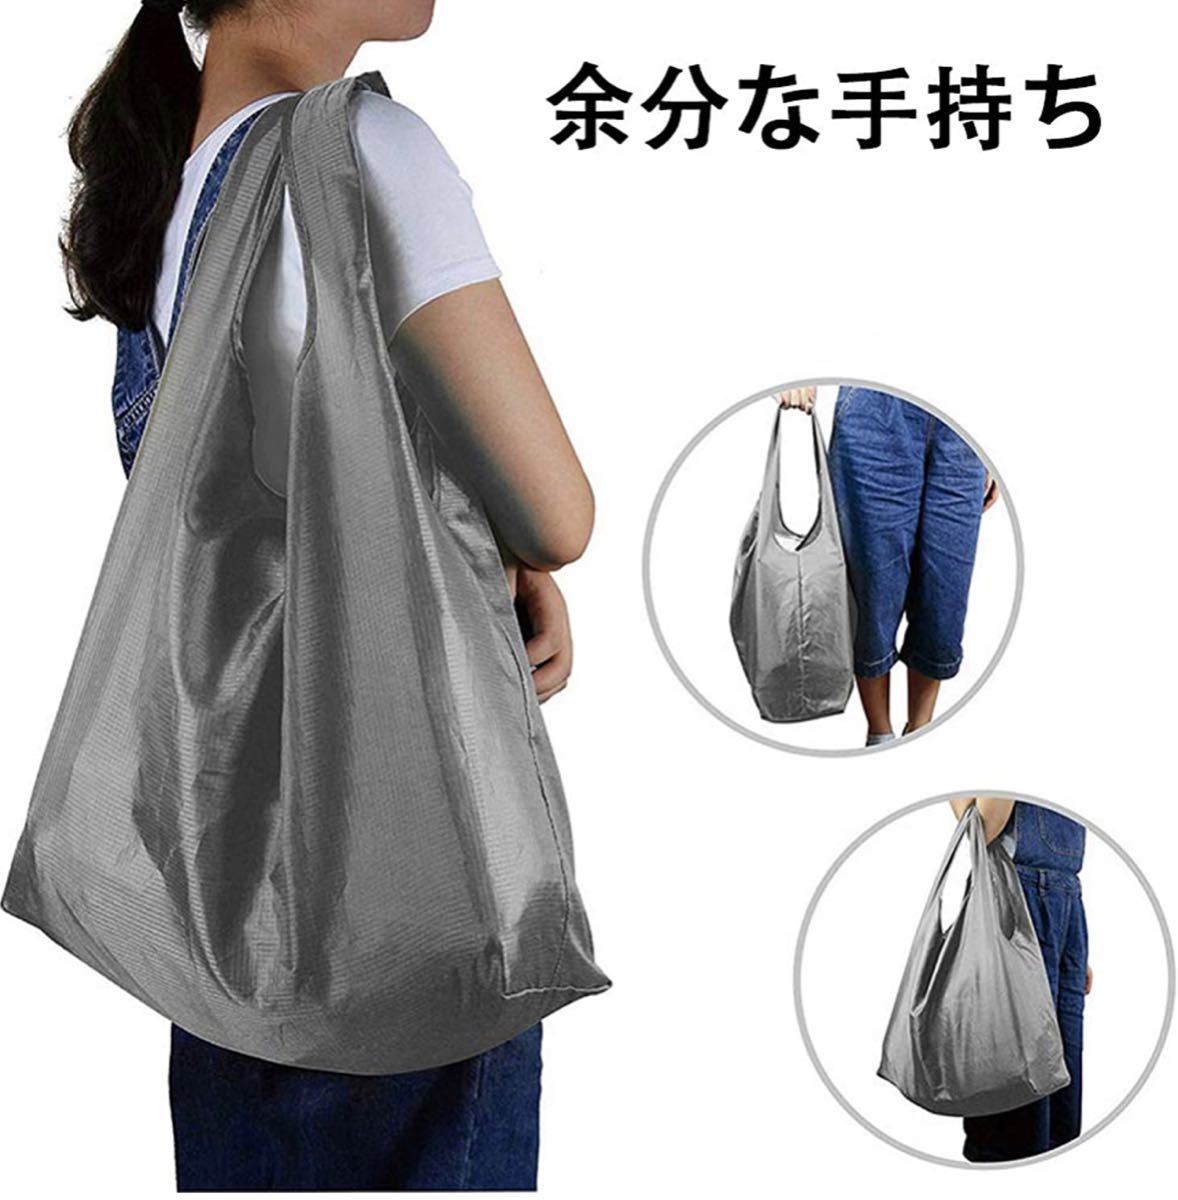 エコバッグ コンビニバッグ 折りたたみ 買い物袋 買い物バッグ 折り畳みエコバッグ 防水素材